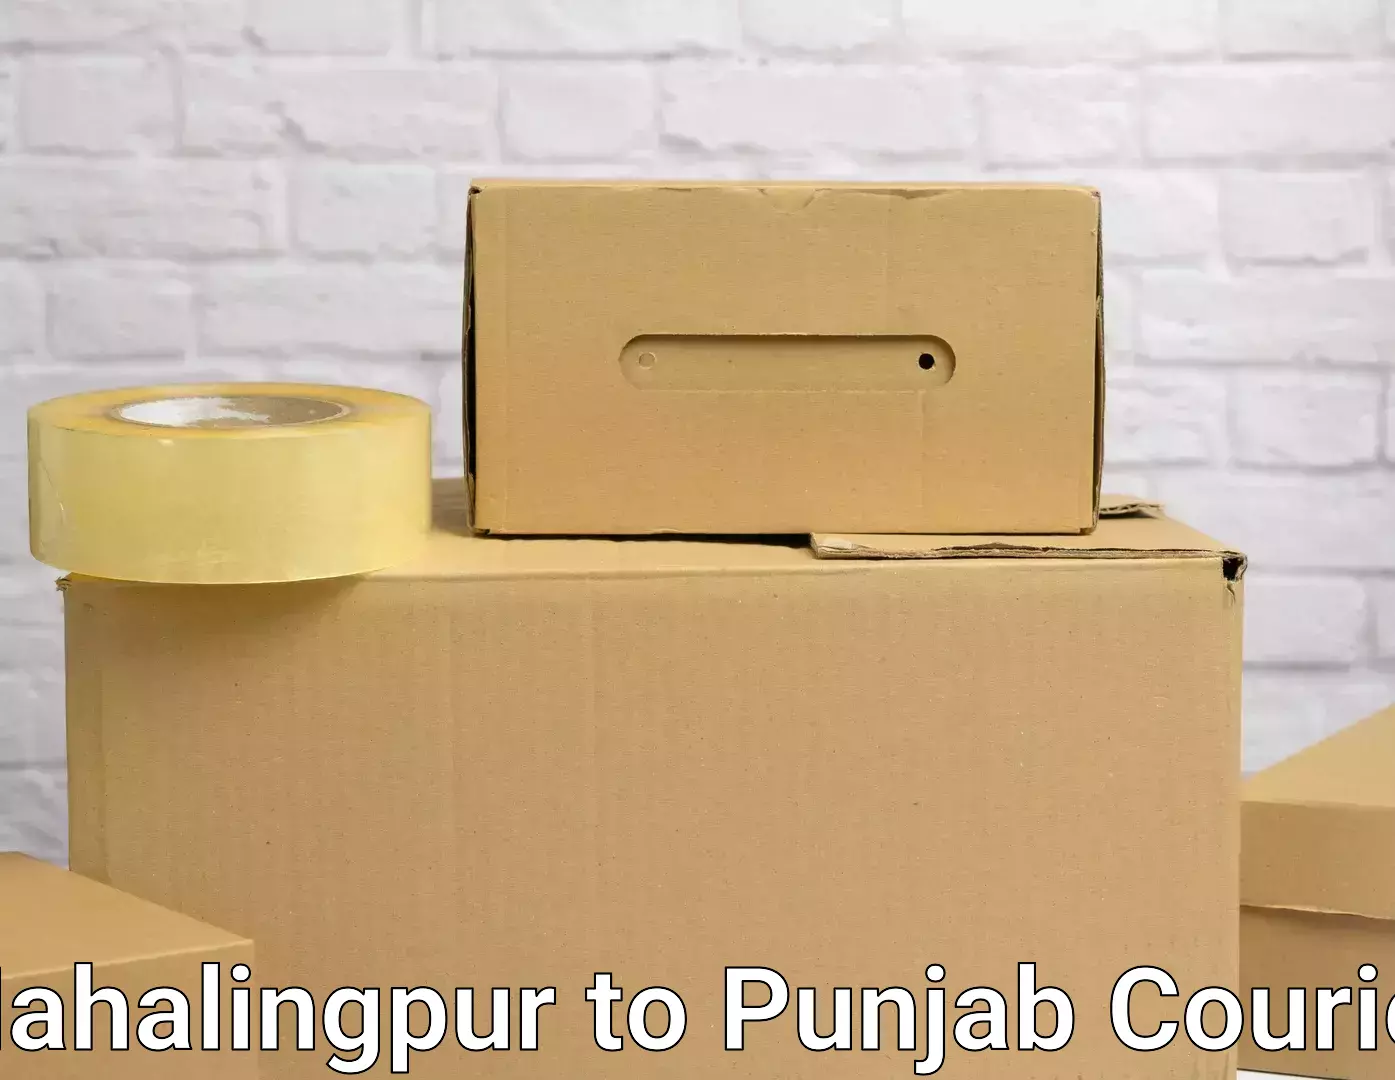 Moving and handling services Mahalingpur to Punjab